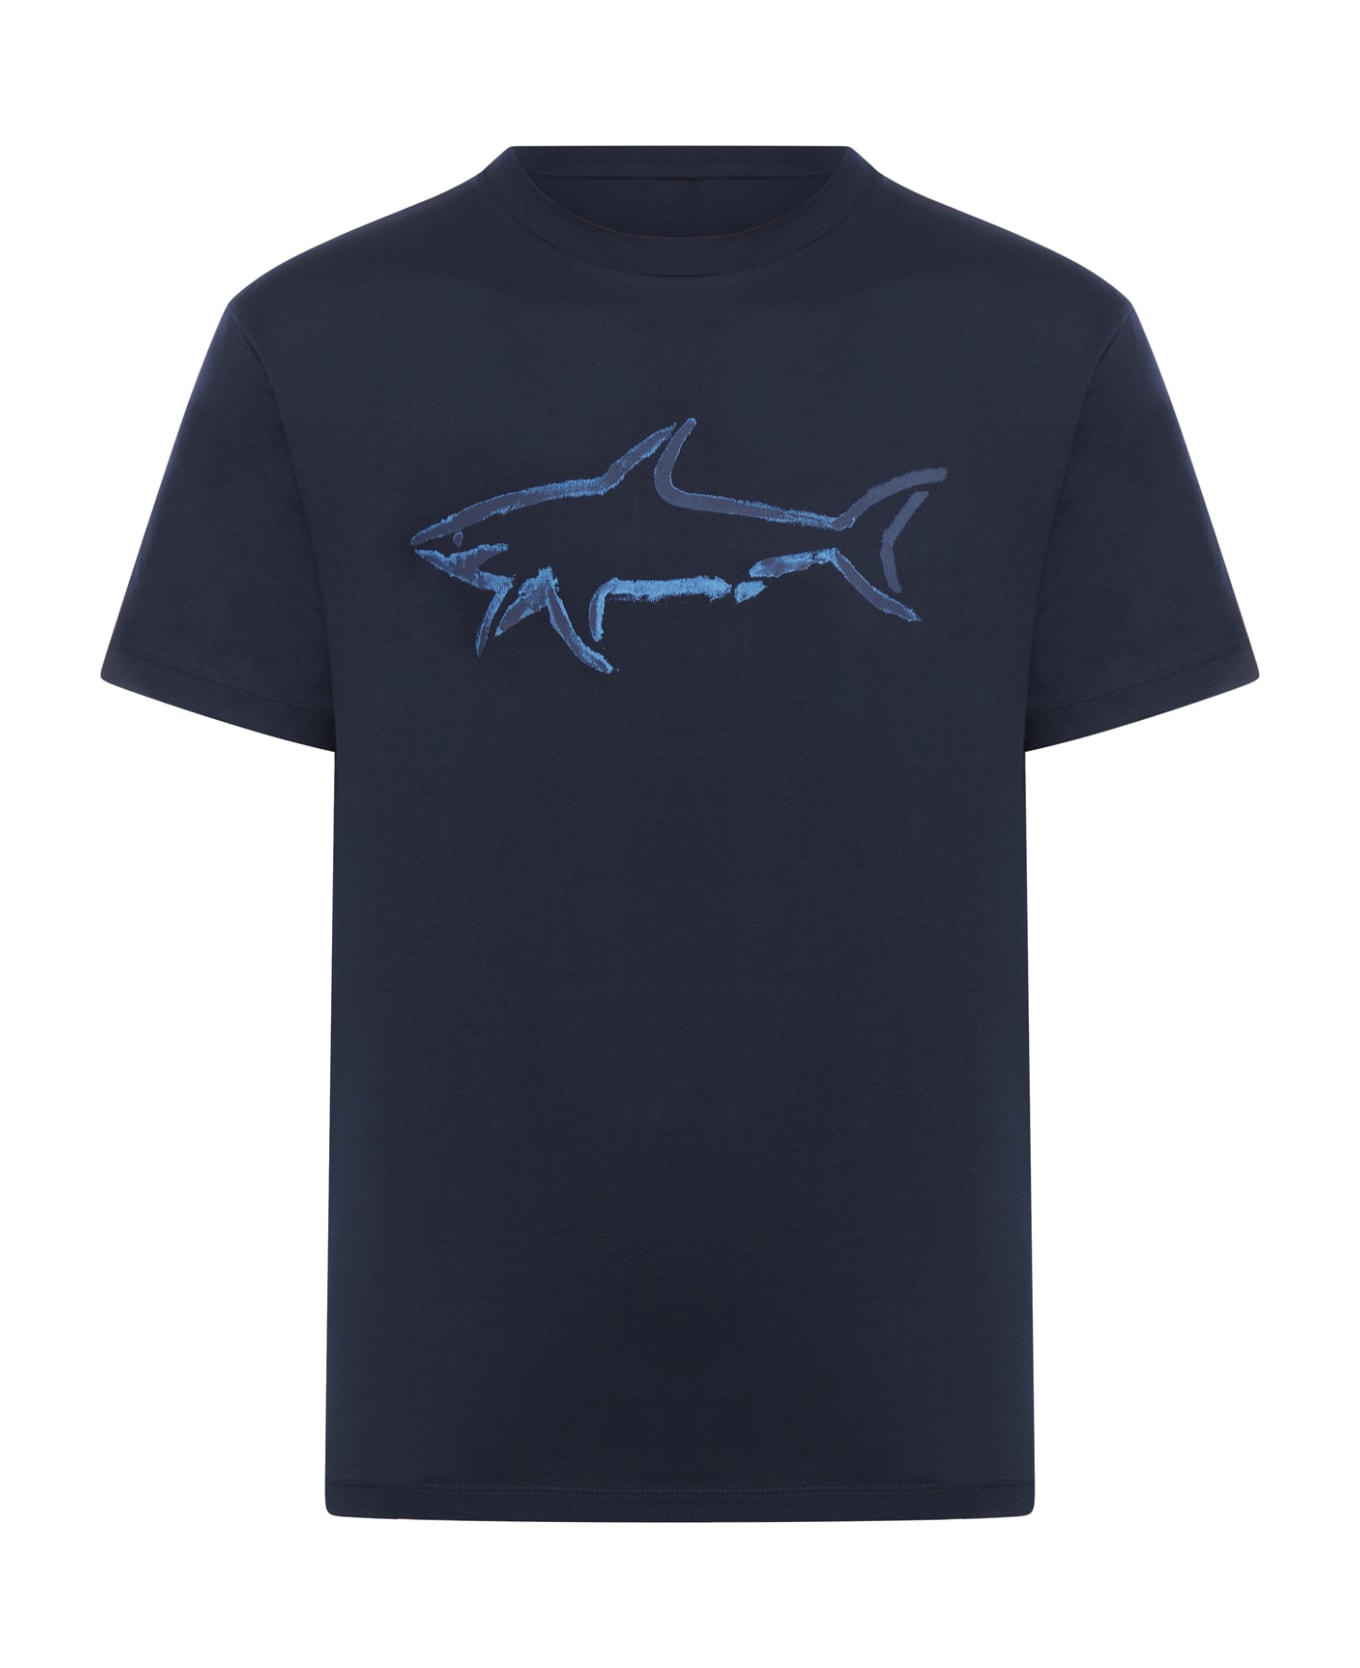 Paul&Shark T-shirt Cotton - Blue シャツ